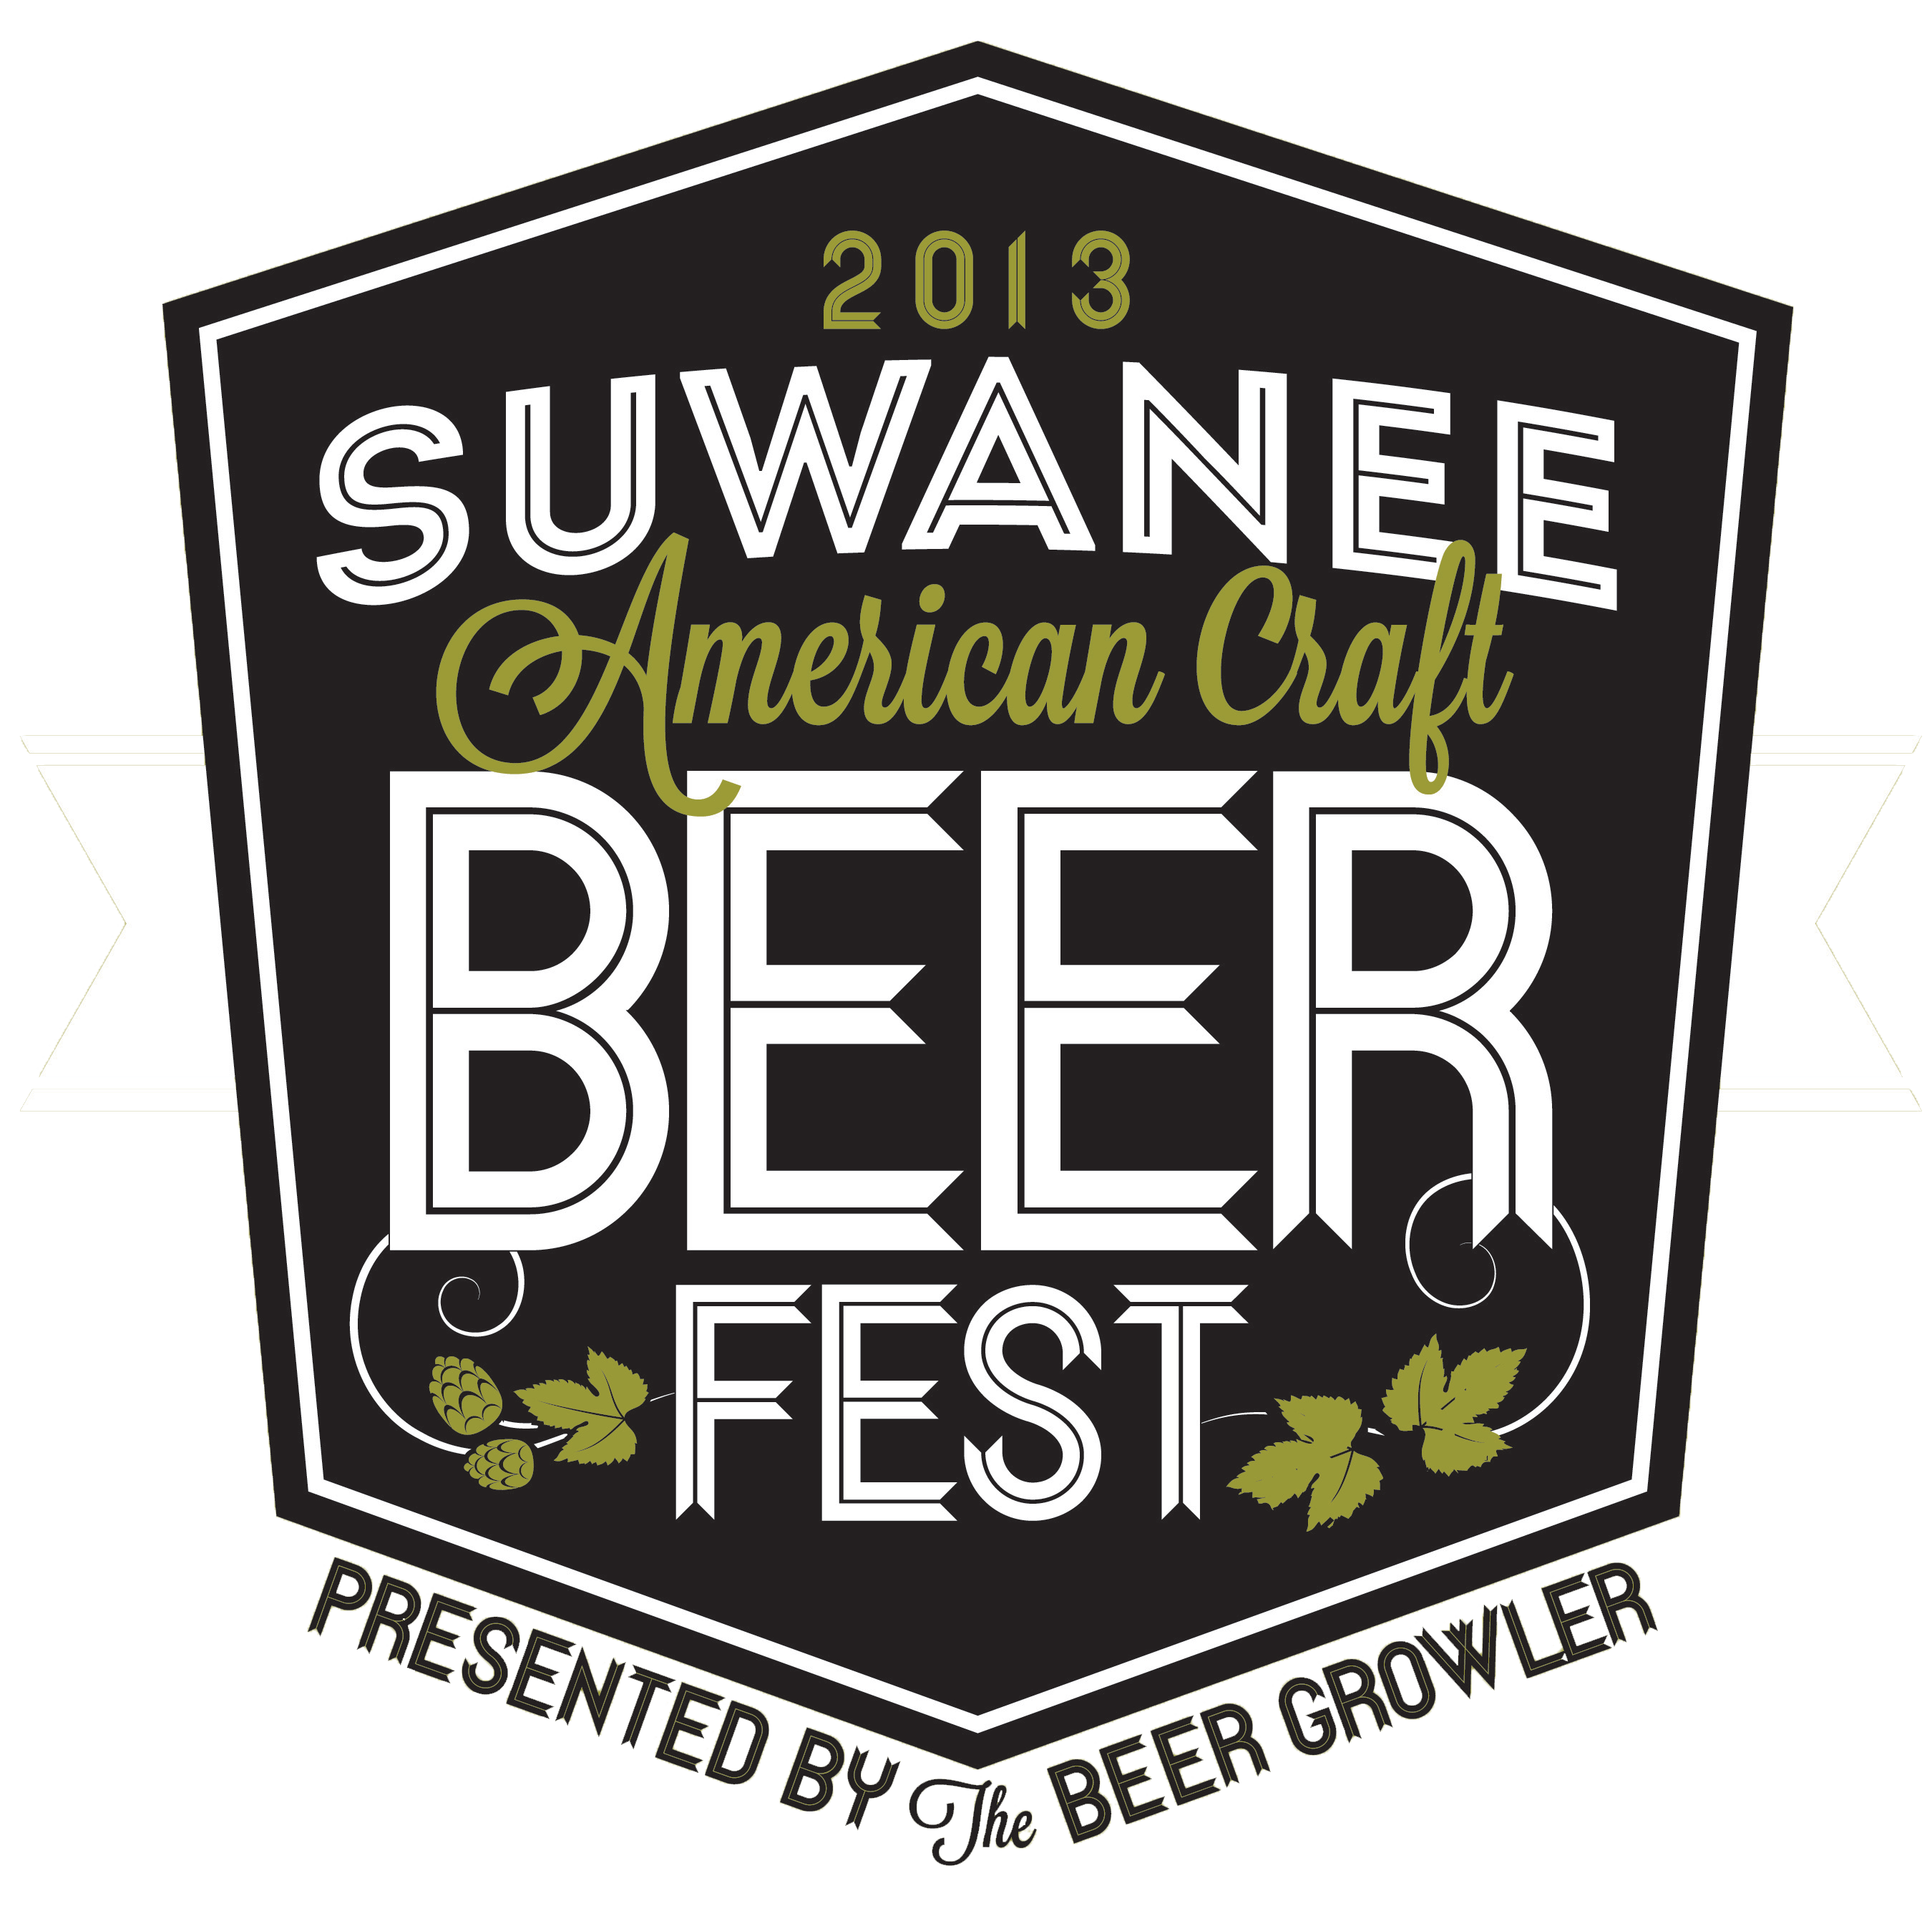 American Beer Logo - 2013 Suwanee American Craft Beer Fest